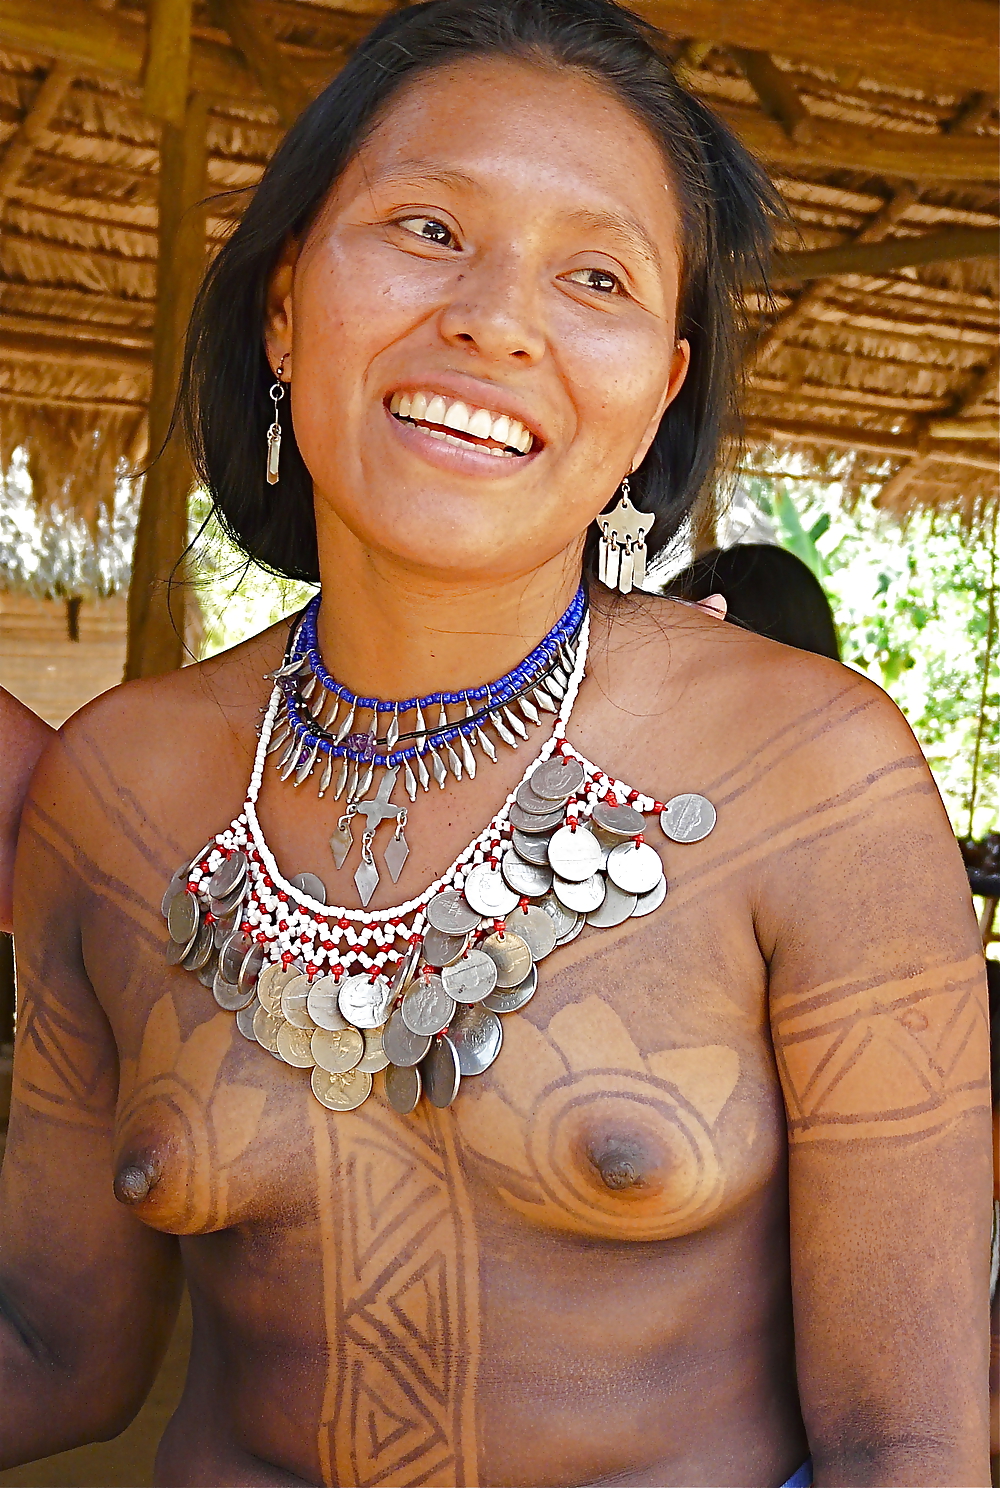 Mujeres de africa desnudas